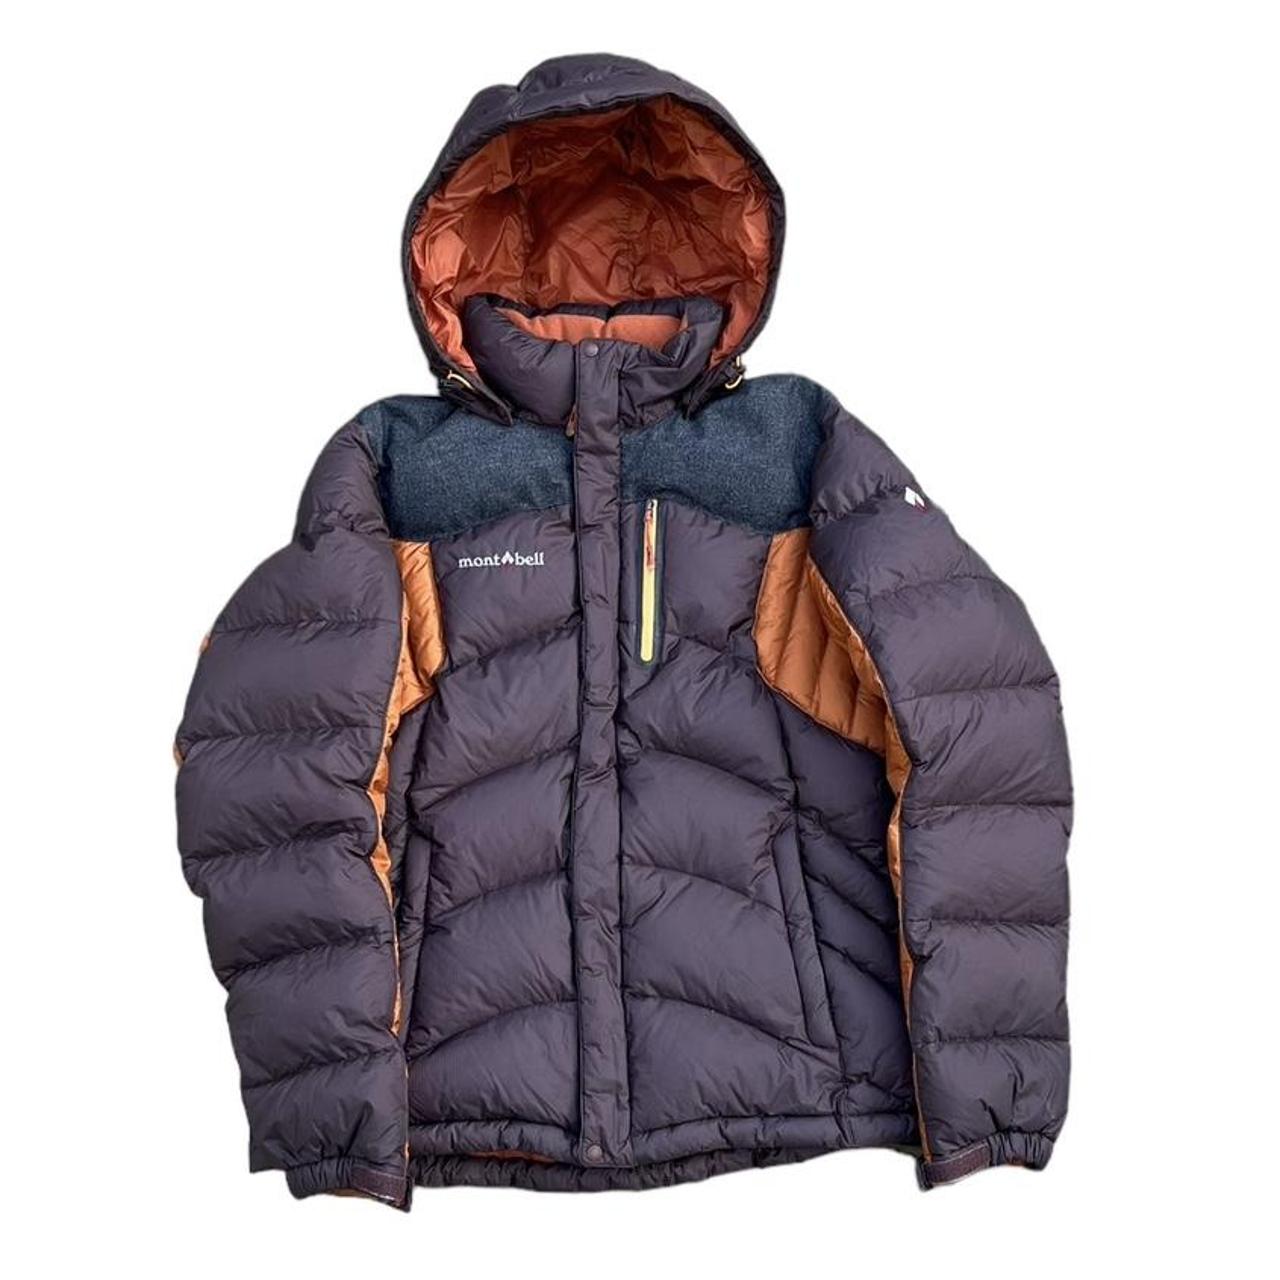 Mont bell vintage brown puffer jacket 💫 Size Large... - Depop